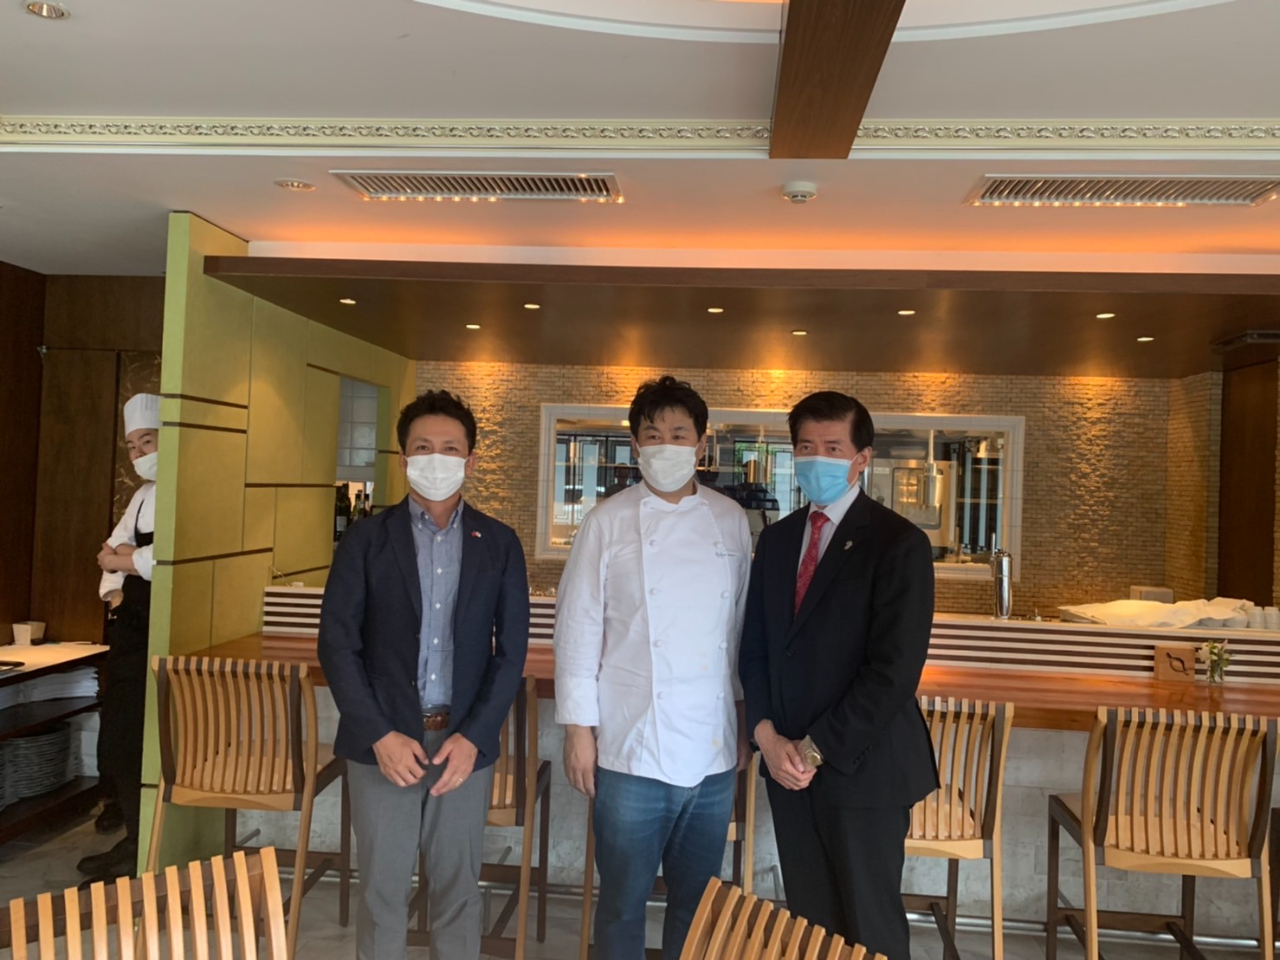 株式會社AIS青砥俊弥代表取締役(左)、小西晃治代表取締役總料理長(中)